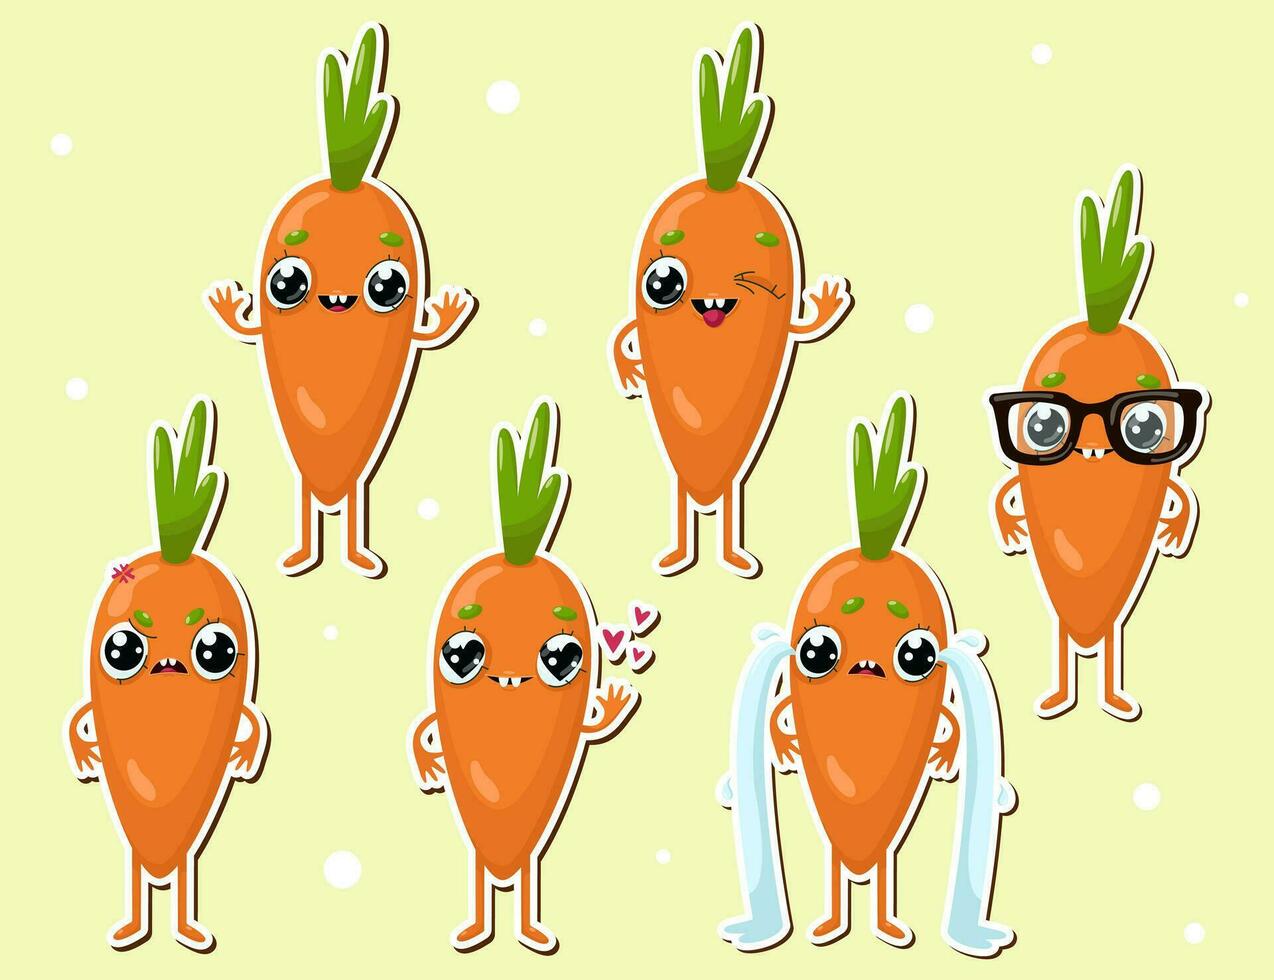 vettore illustrazione di carota personaggio adesivi con vario carino espressione, cool, divertente, ambientato di carota isolato, cartone animato